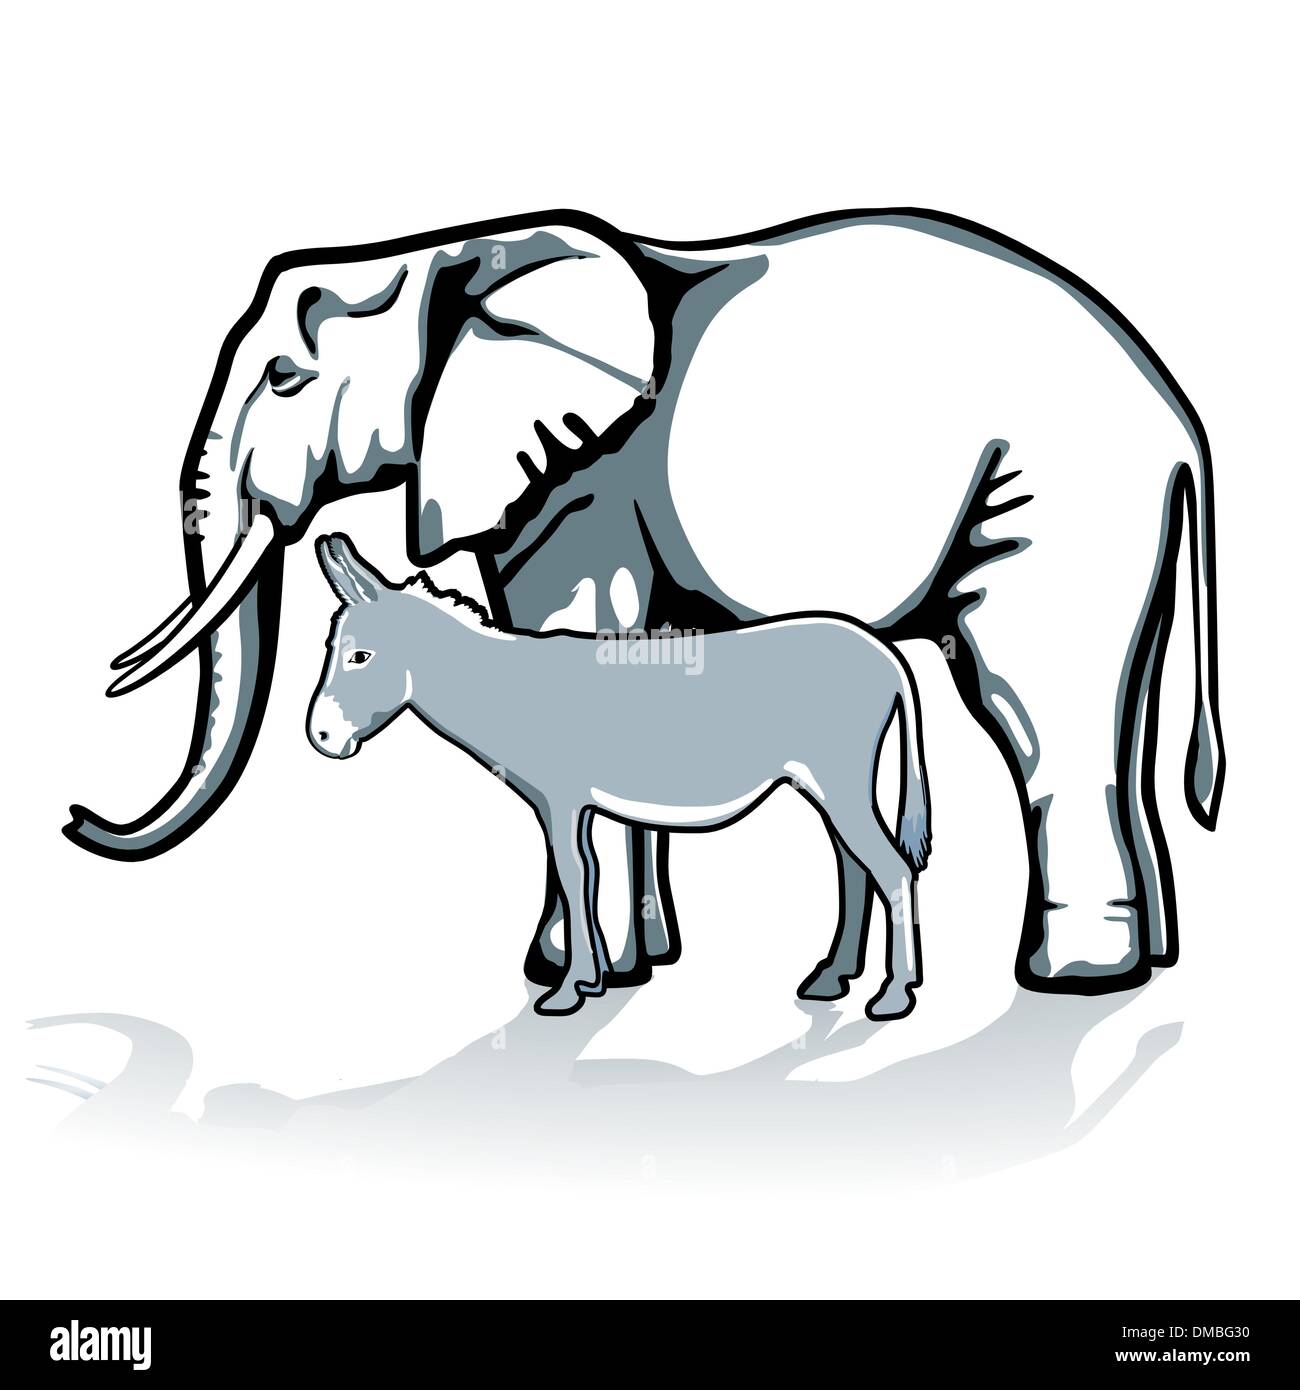 Et l'éléphant républicain et démocrate, de l'âne Illustration de Vecteur